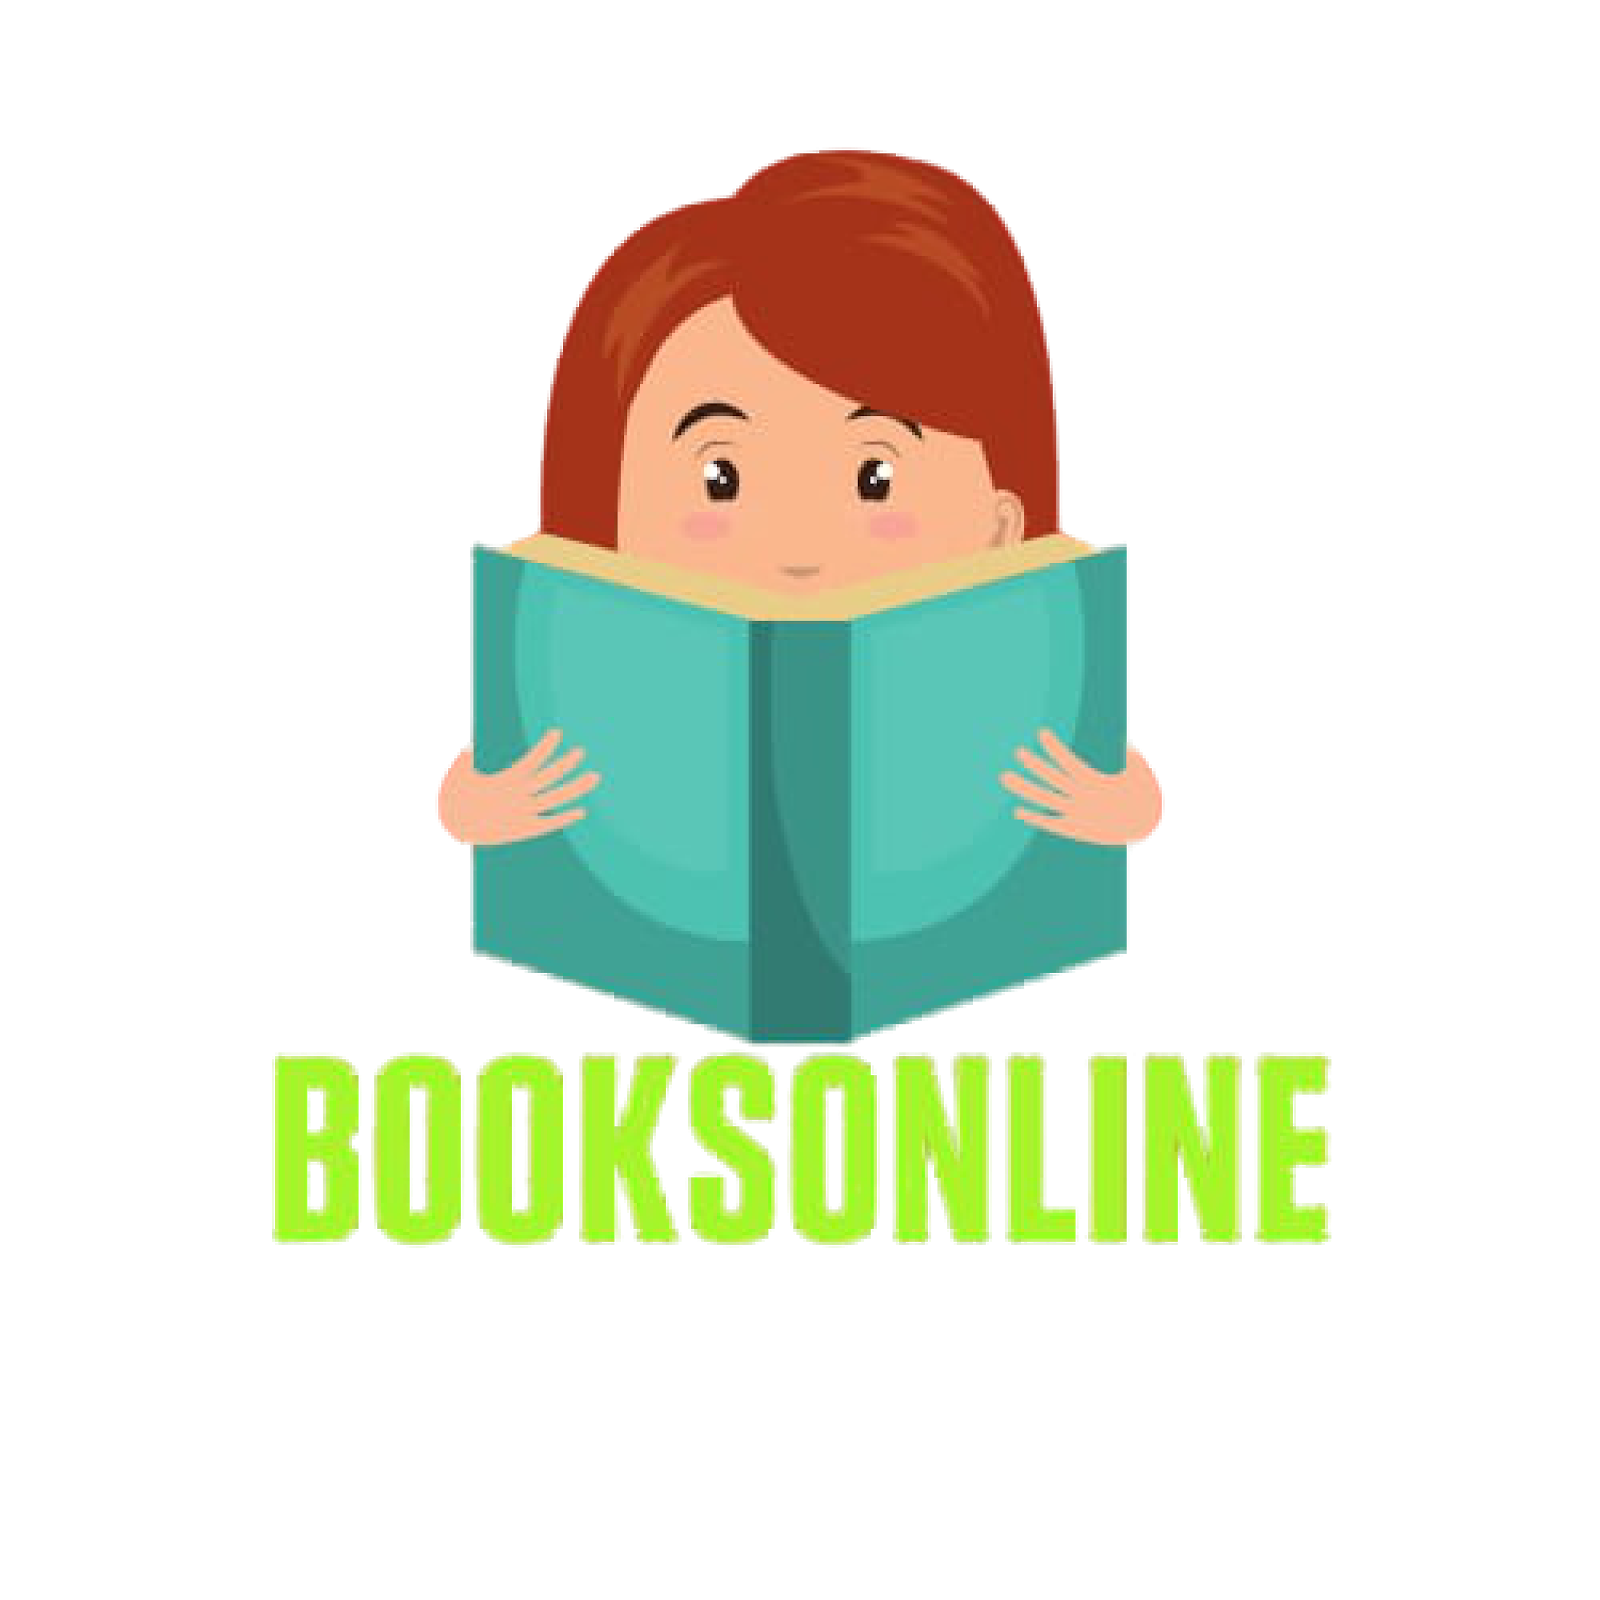 BooksOnline